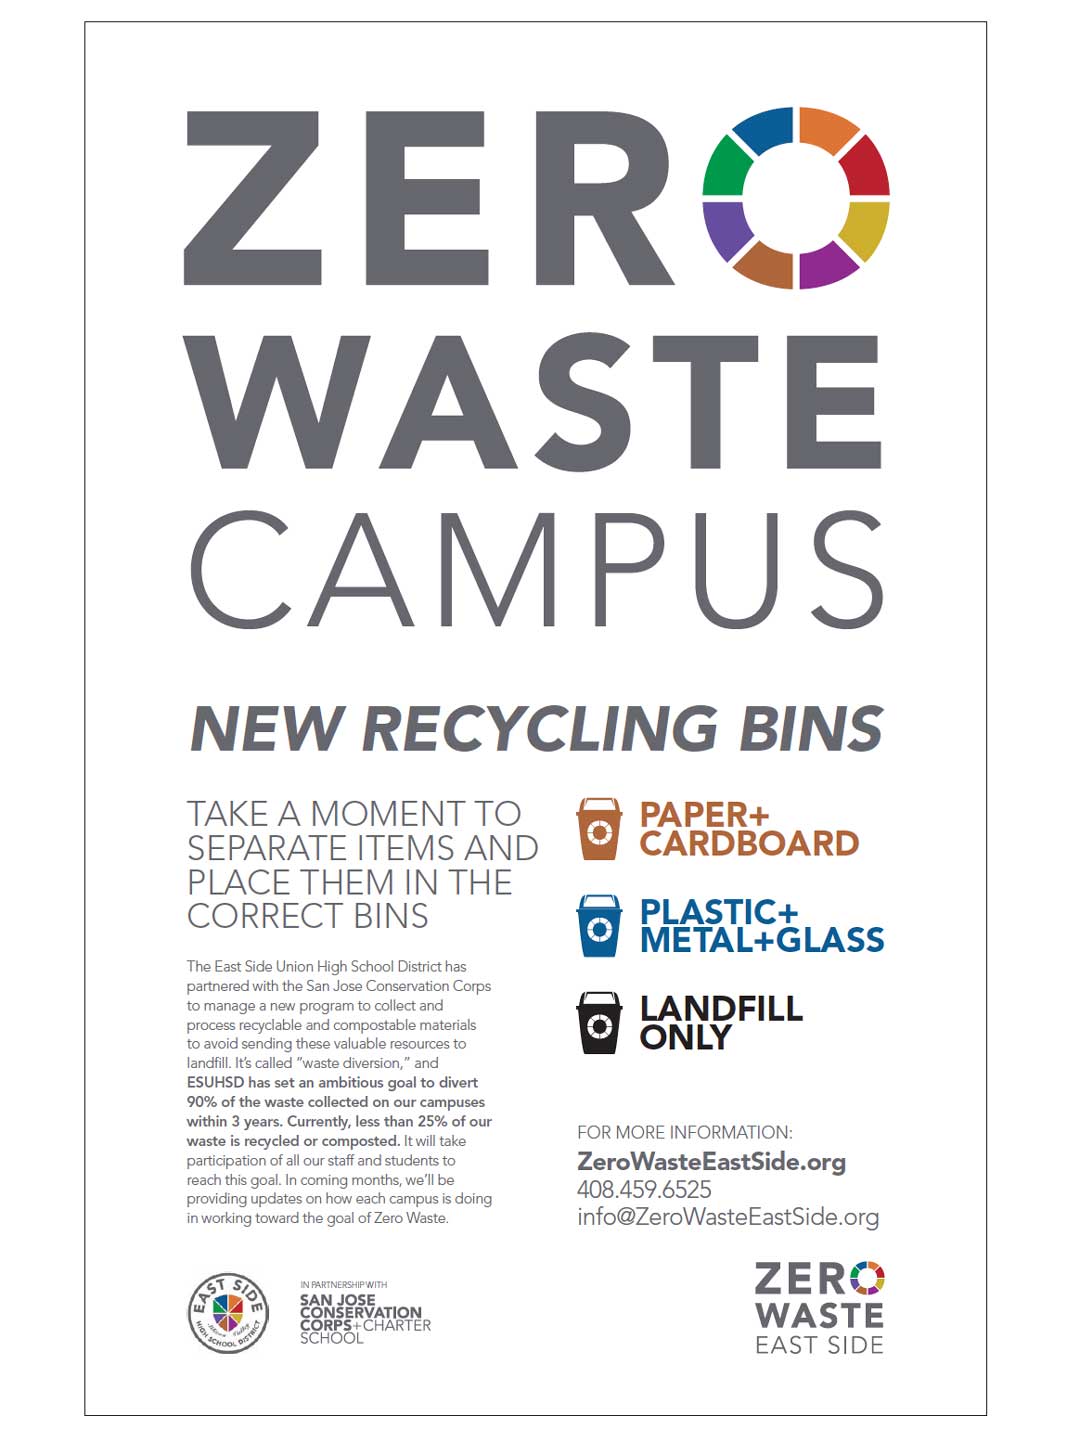 Zero Waste Campus 11x17 tabloid poster